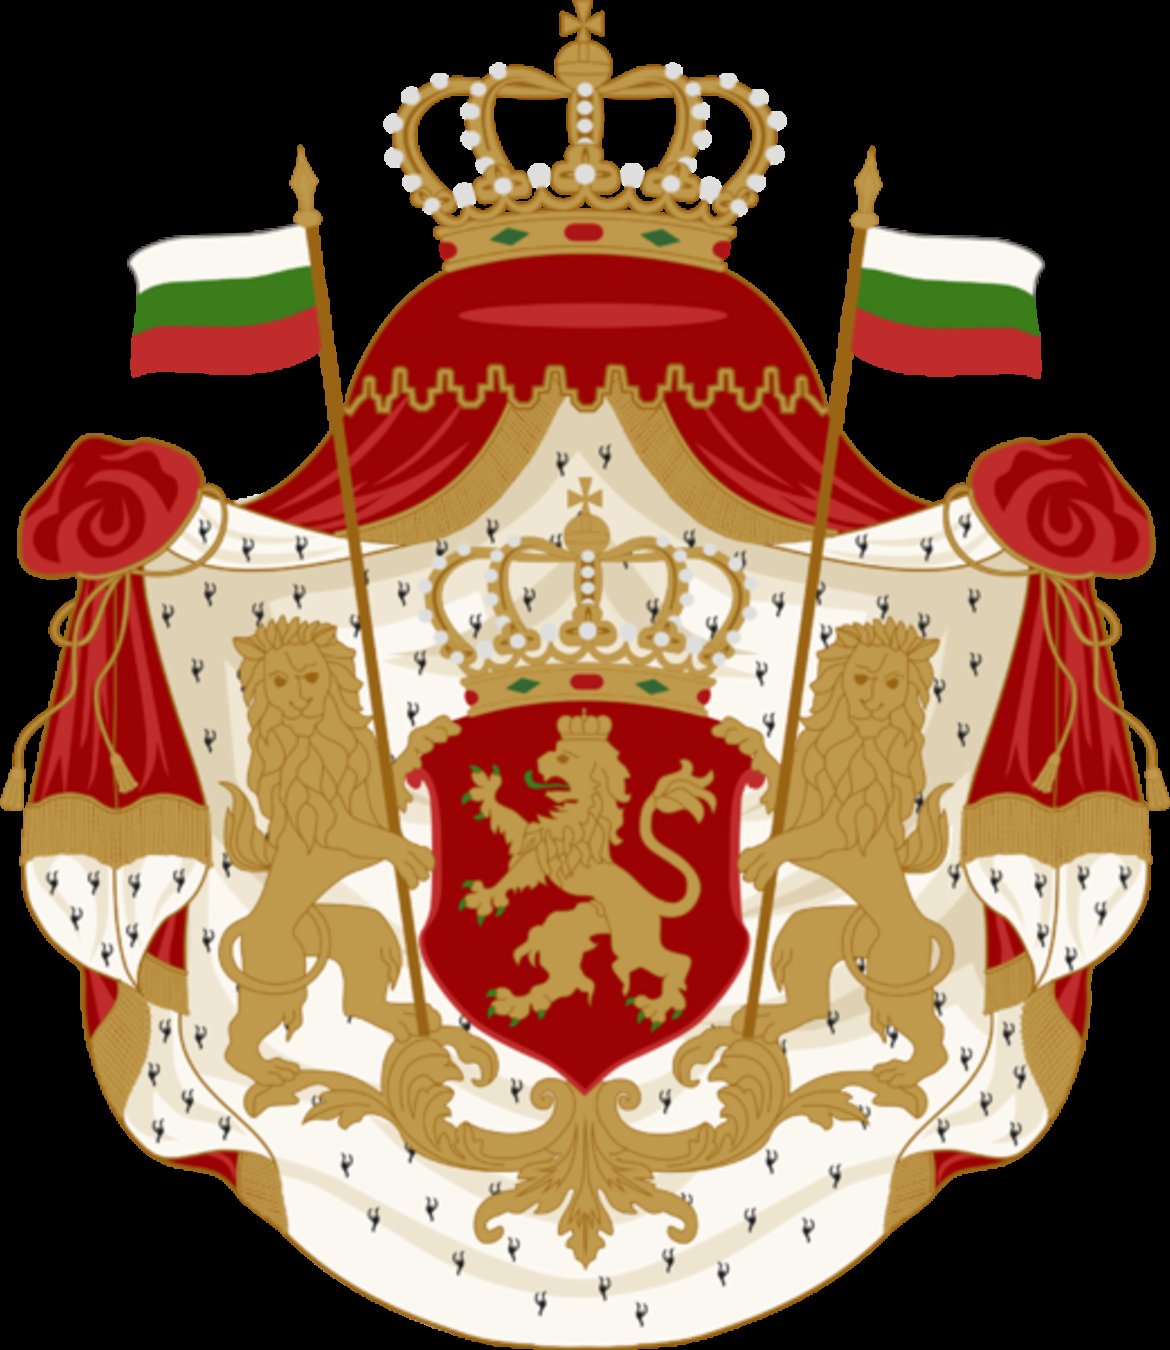 Една от първите визии на герба на Княжество България след Освобождението